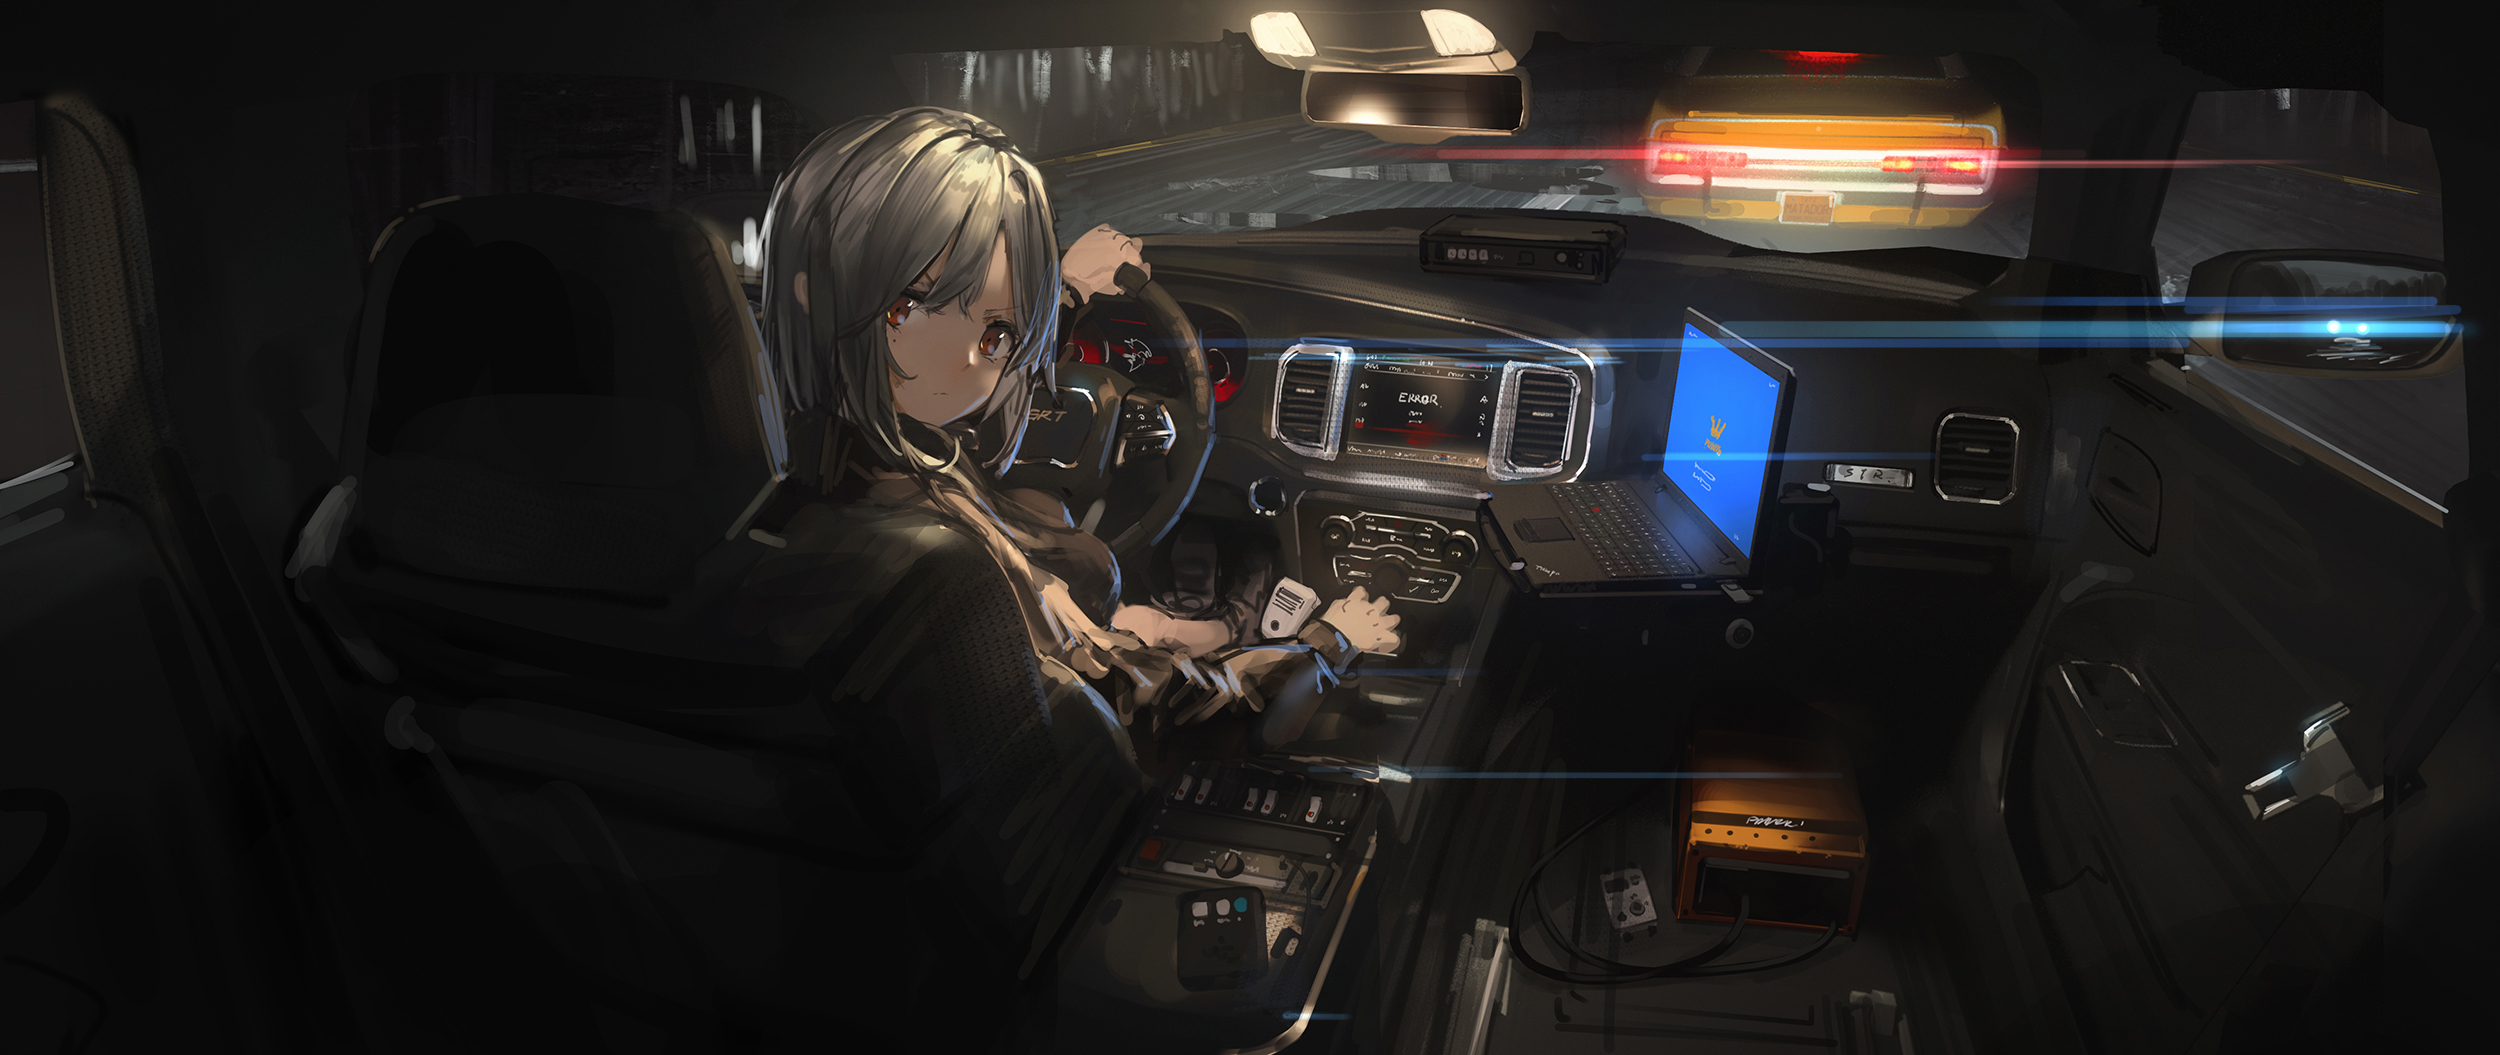 Anime Anime Girls Digital Art Artwork Renatus Z Car Interior Laptop Looking Back Gray Hair Brown Eye 2500x1055